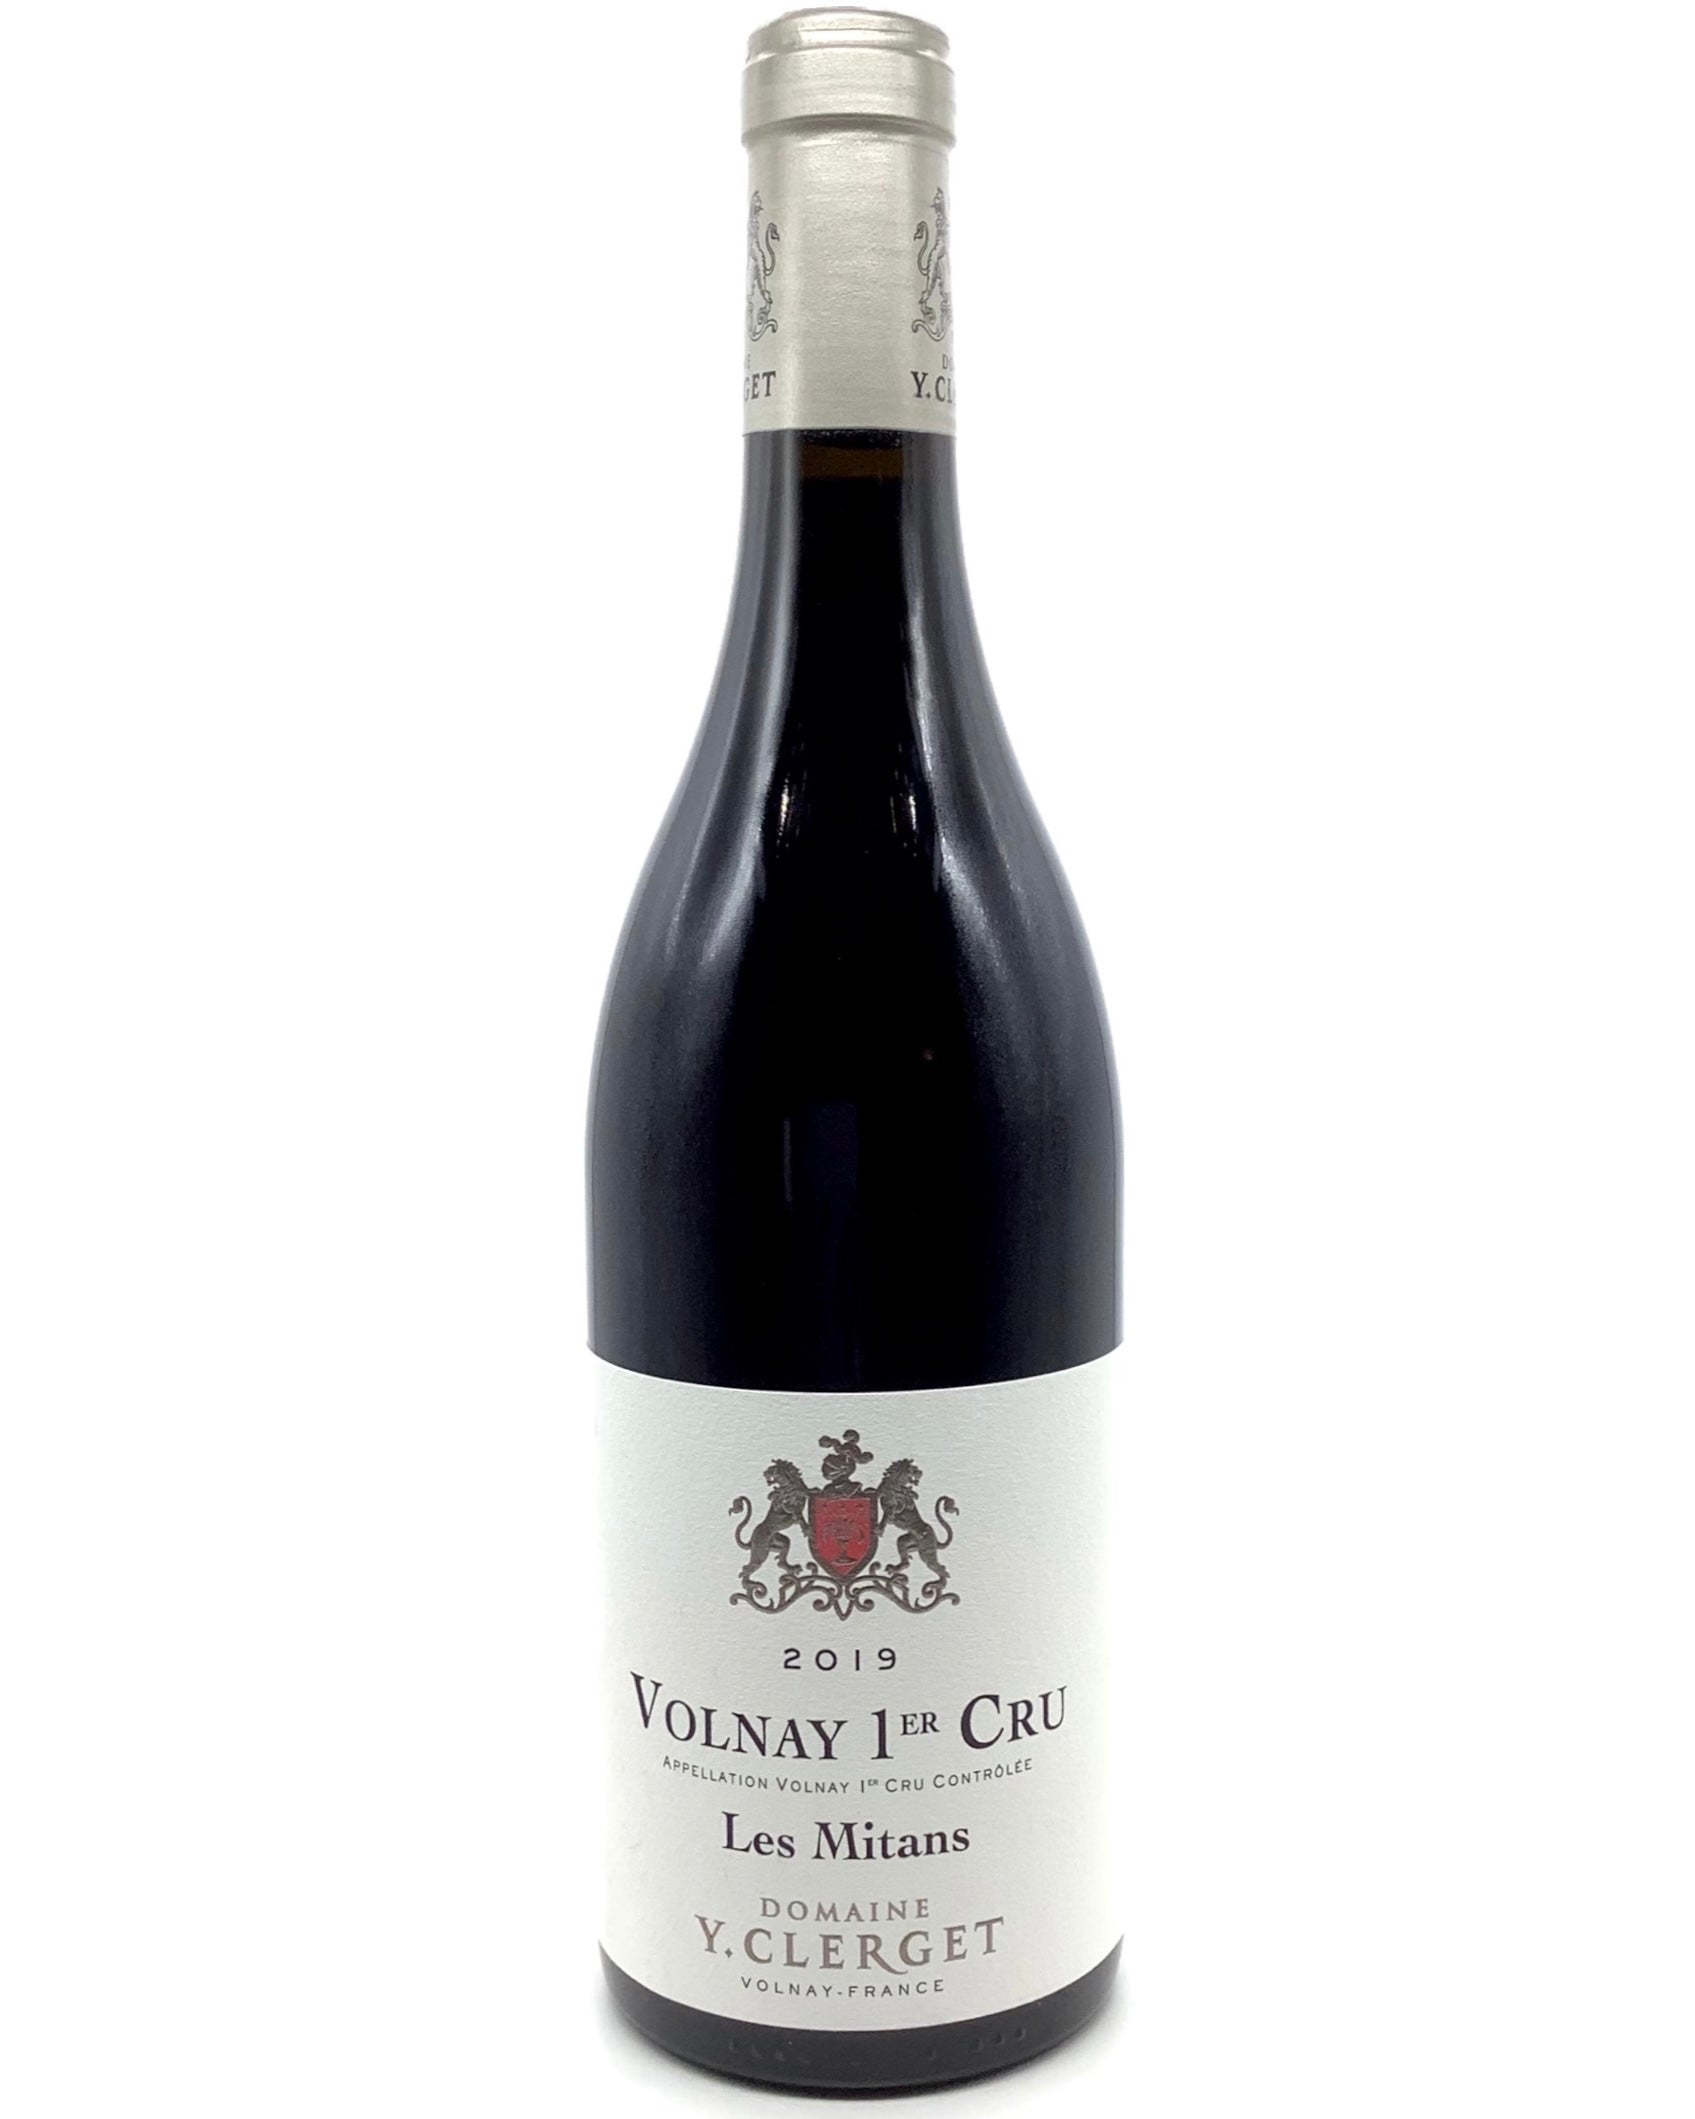 Domaine Y. Clerget, Pinot Noir, Volnay 1er Cru Les Mitans, Côte de Beaune, Burgundy, France 2019